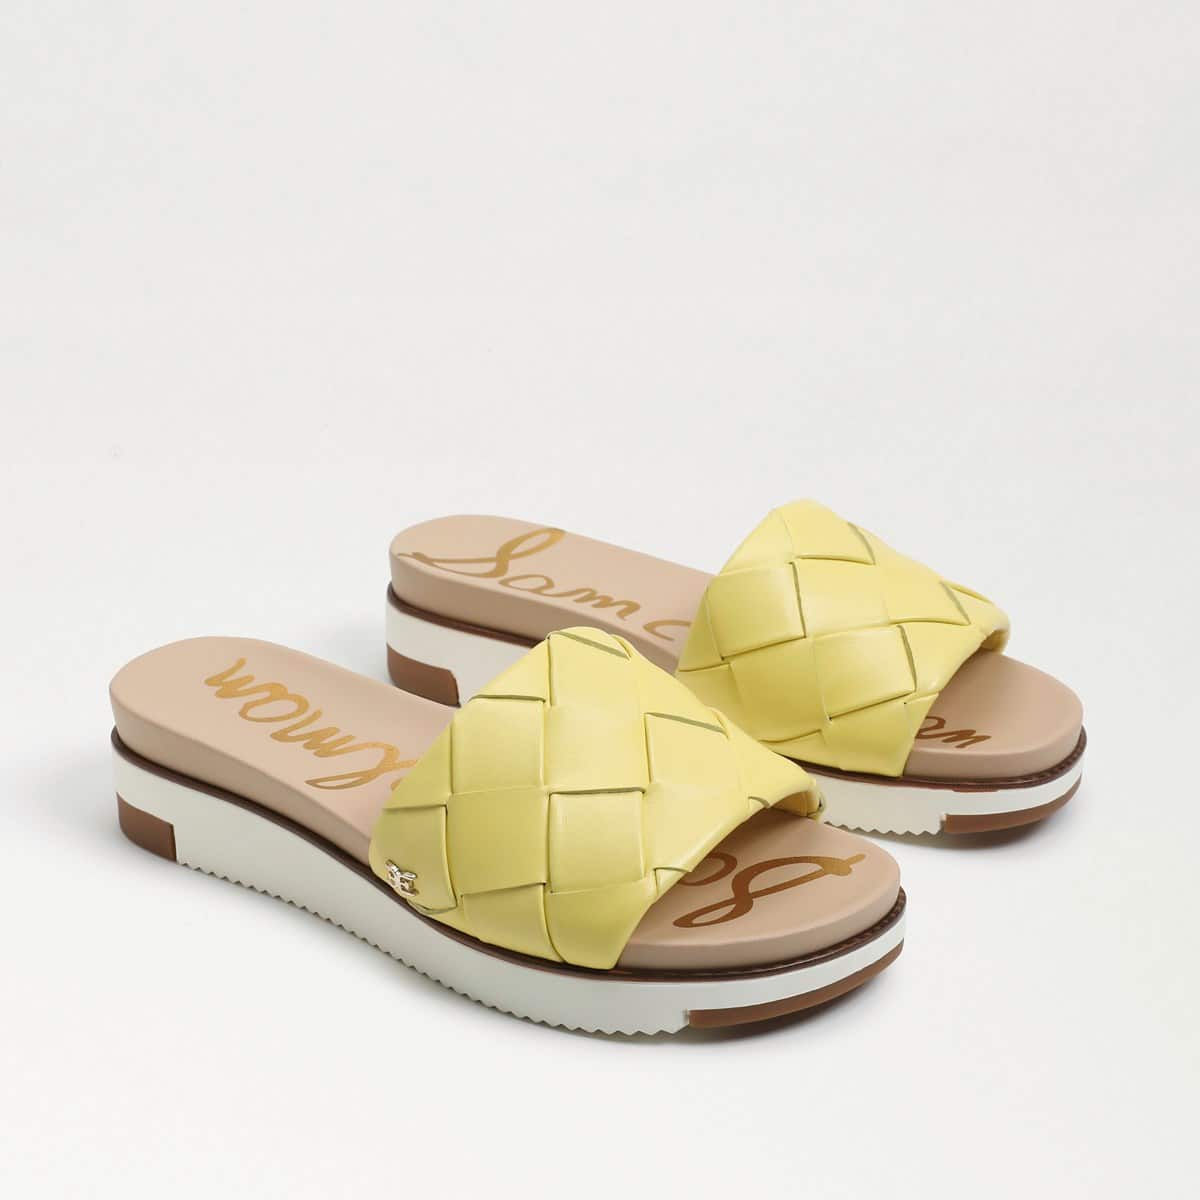 Sam Edelman Adaley Woven Slide Sandal Butter Yellow Leather LkaM